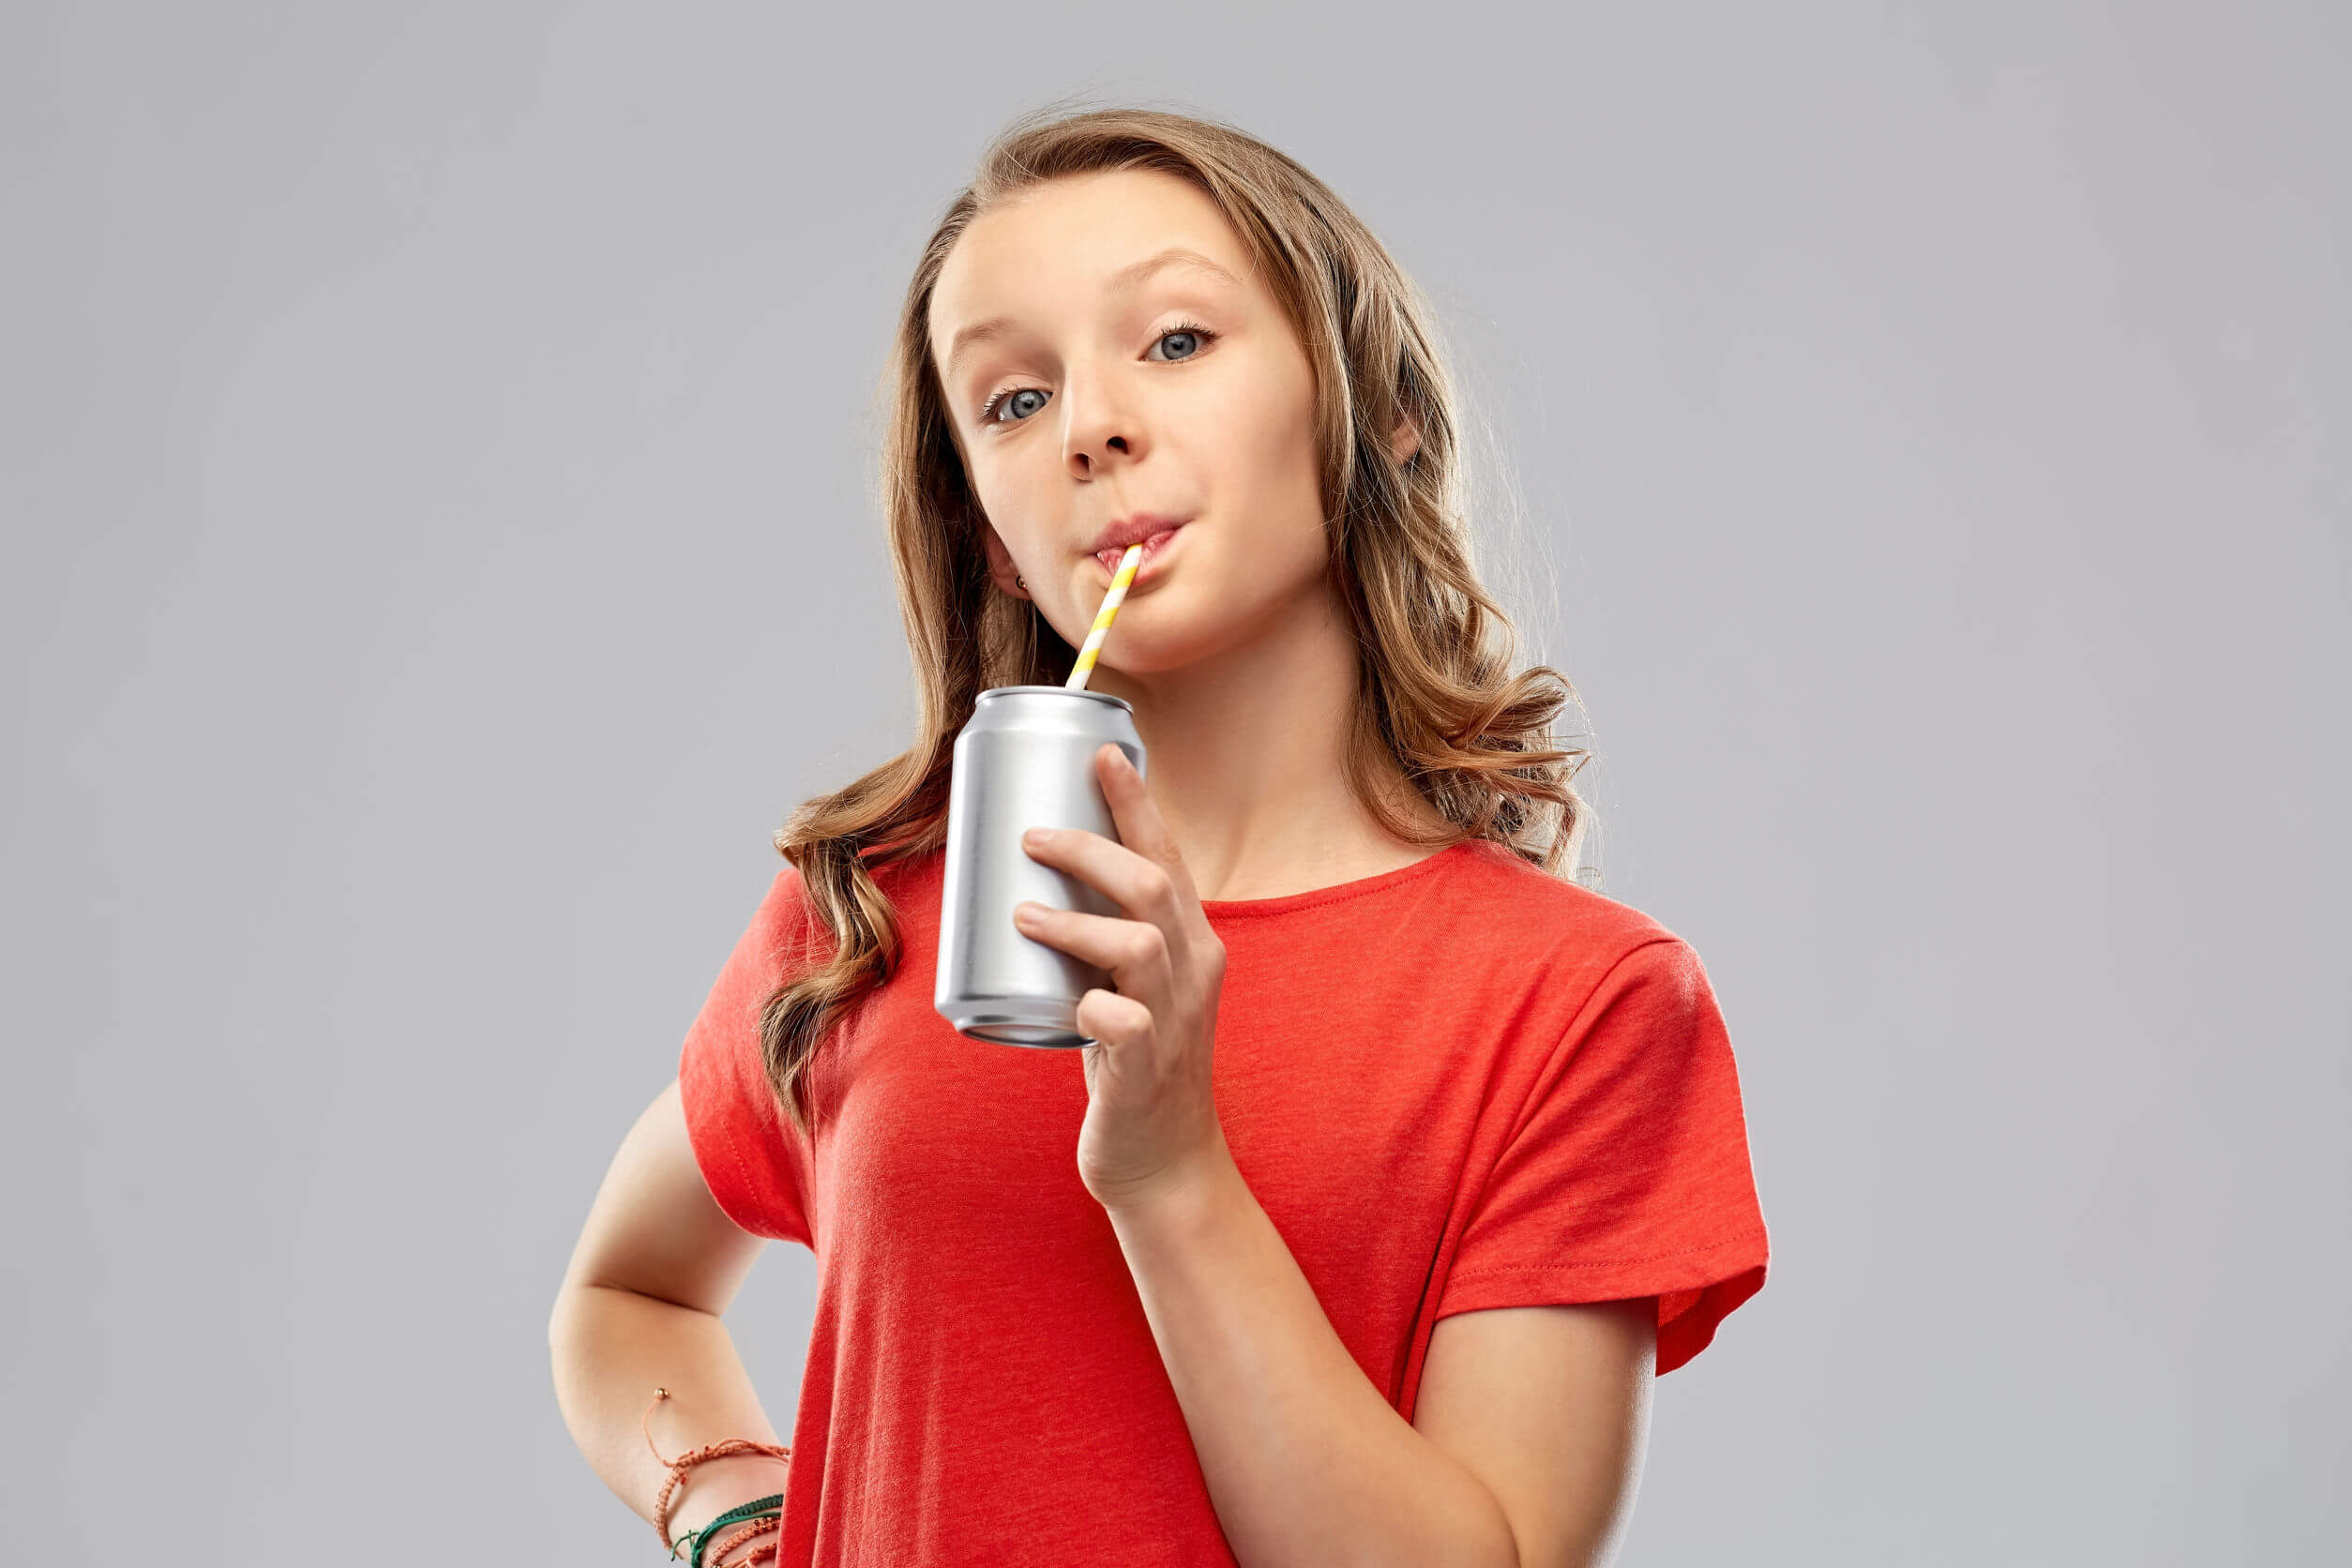 Chica adolescente bebiendo un refresco con muchos carbohidratos y azúcar.